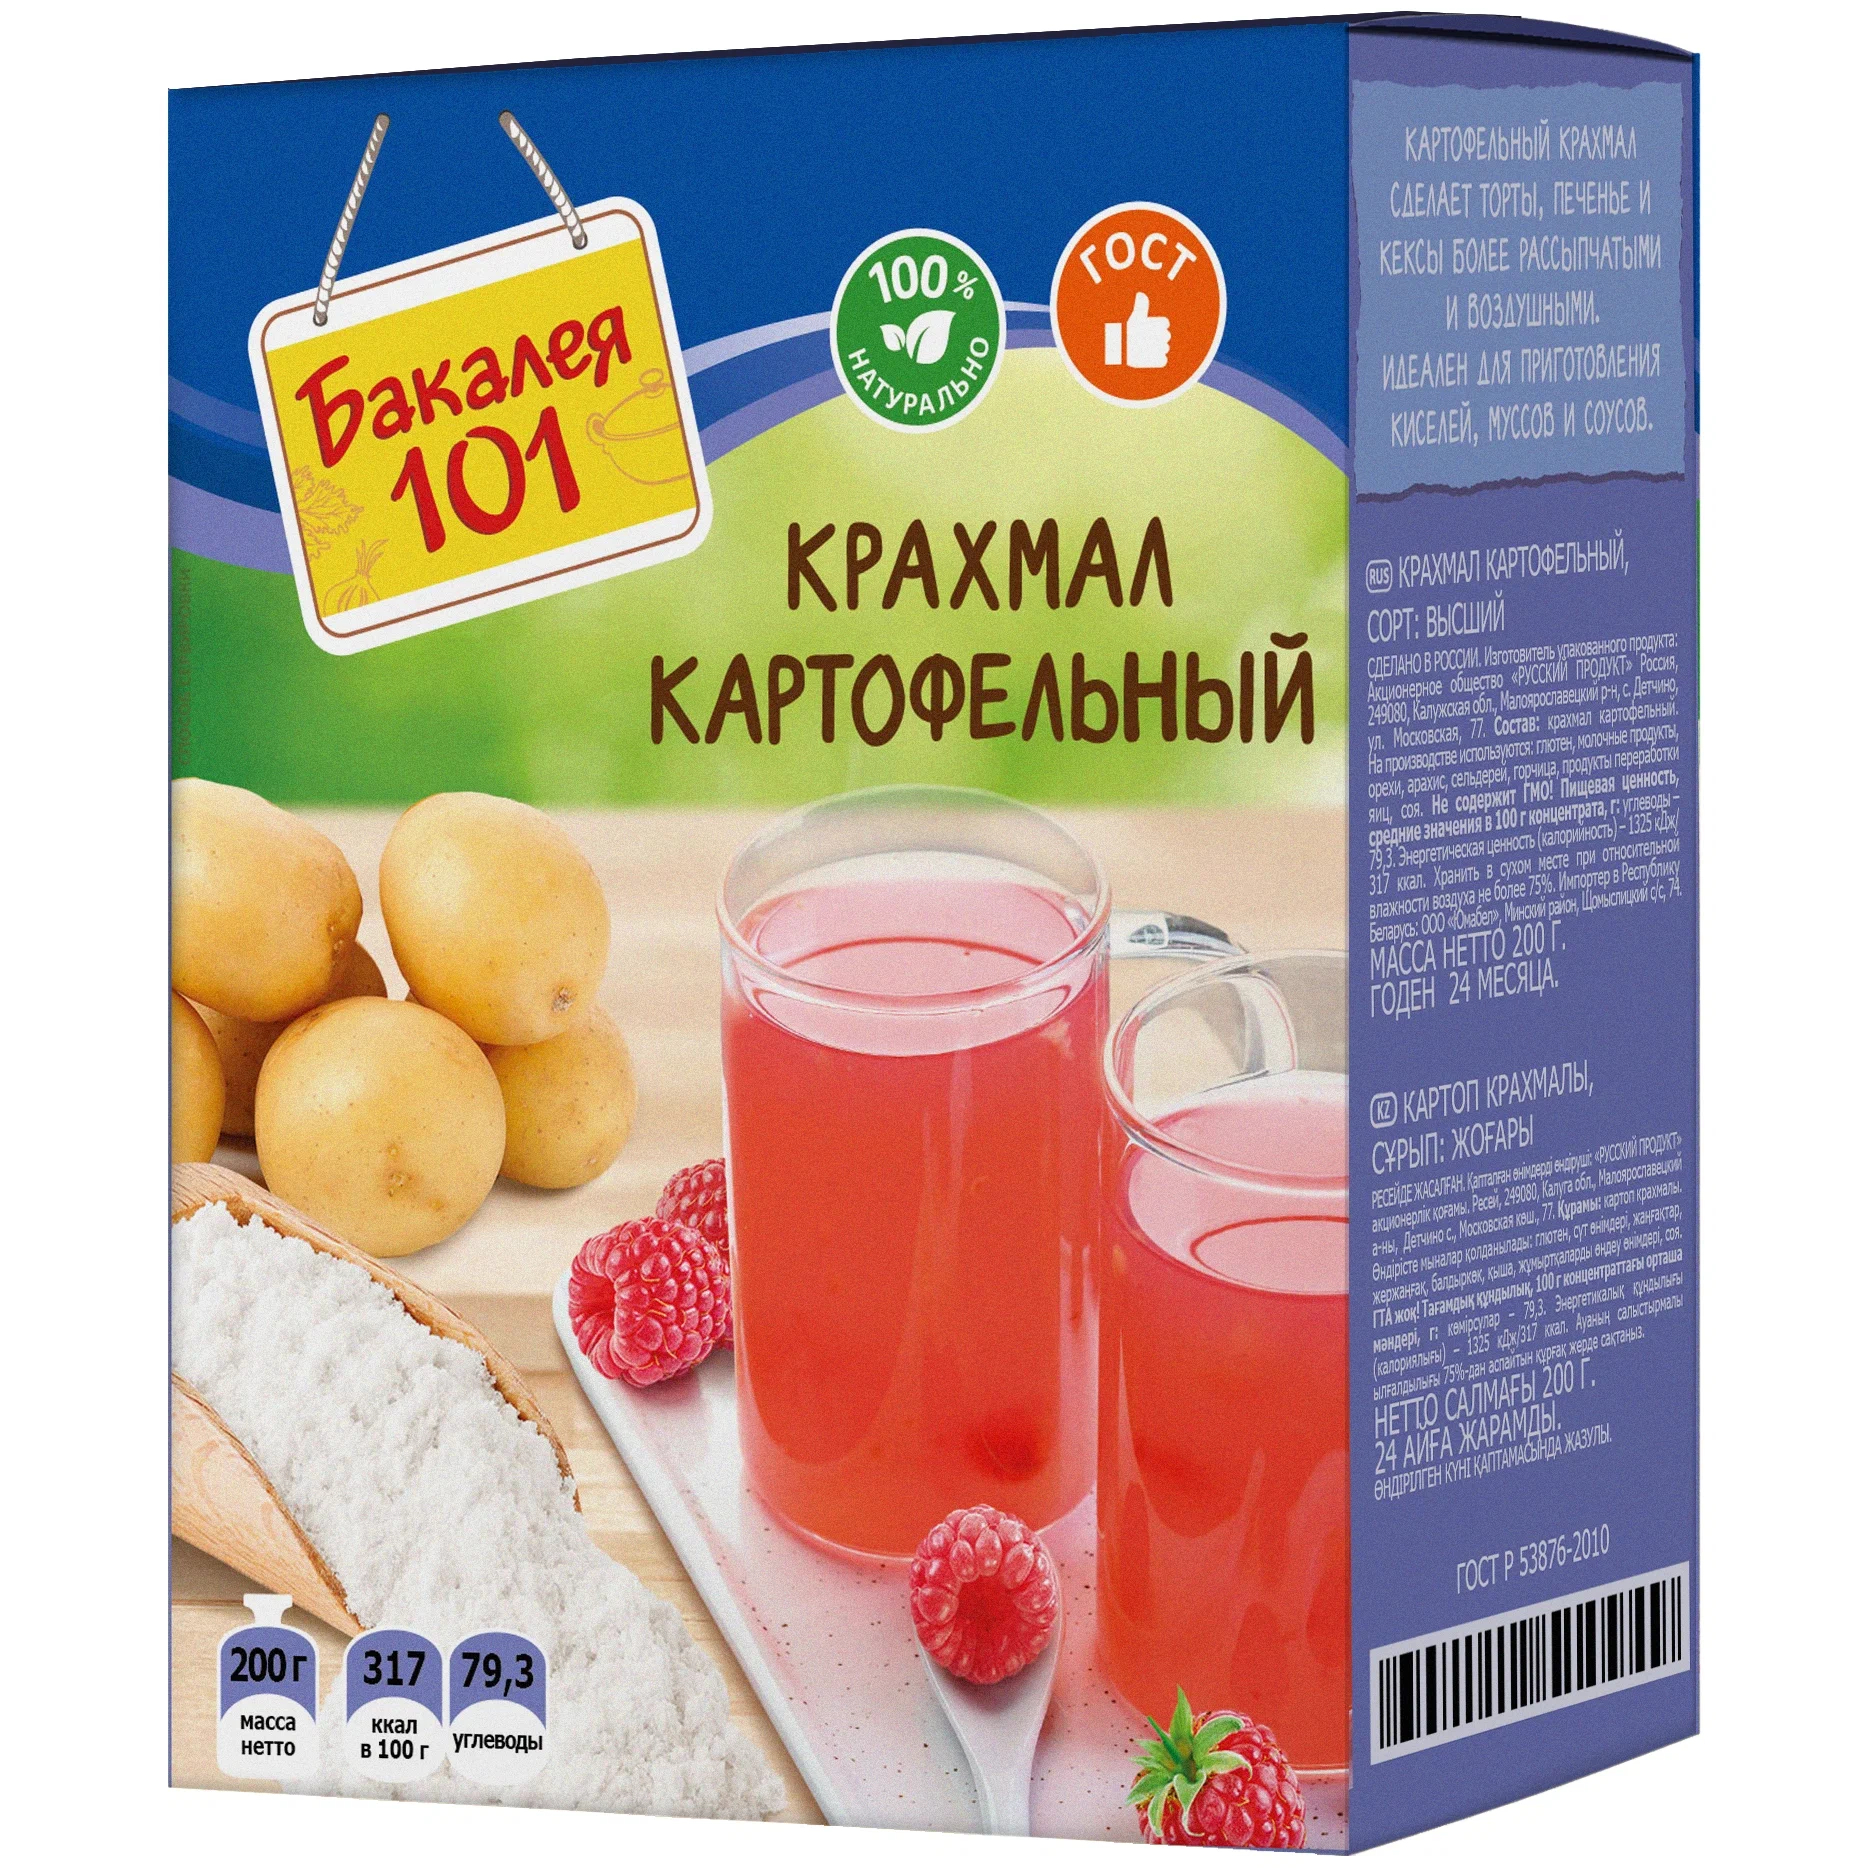 Крахмал картофельный Русский продукт Бакалея 101 200 г харчо острый русский продукт бакалея 101 60 г